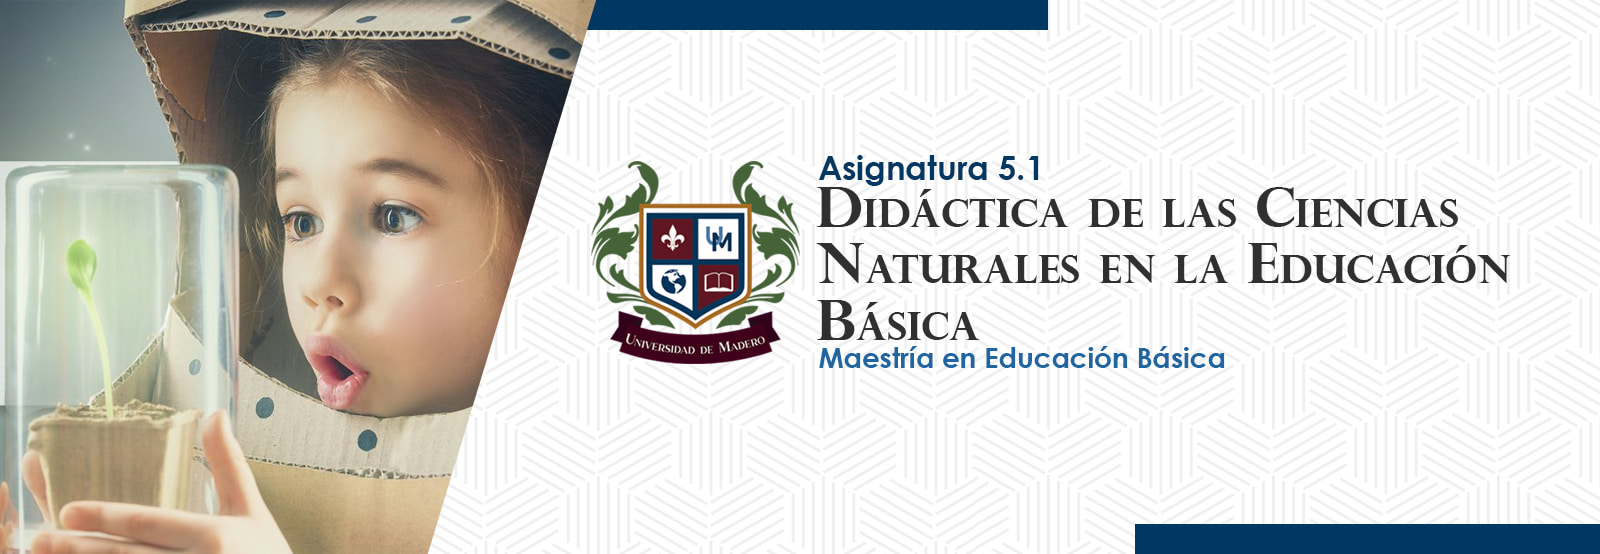 MEB0501 Didáctica de las Ciencias Naturales en Educación Básica